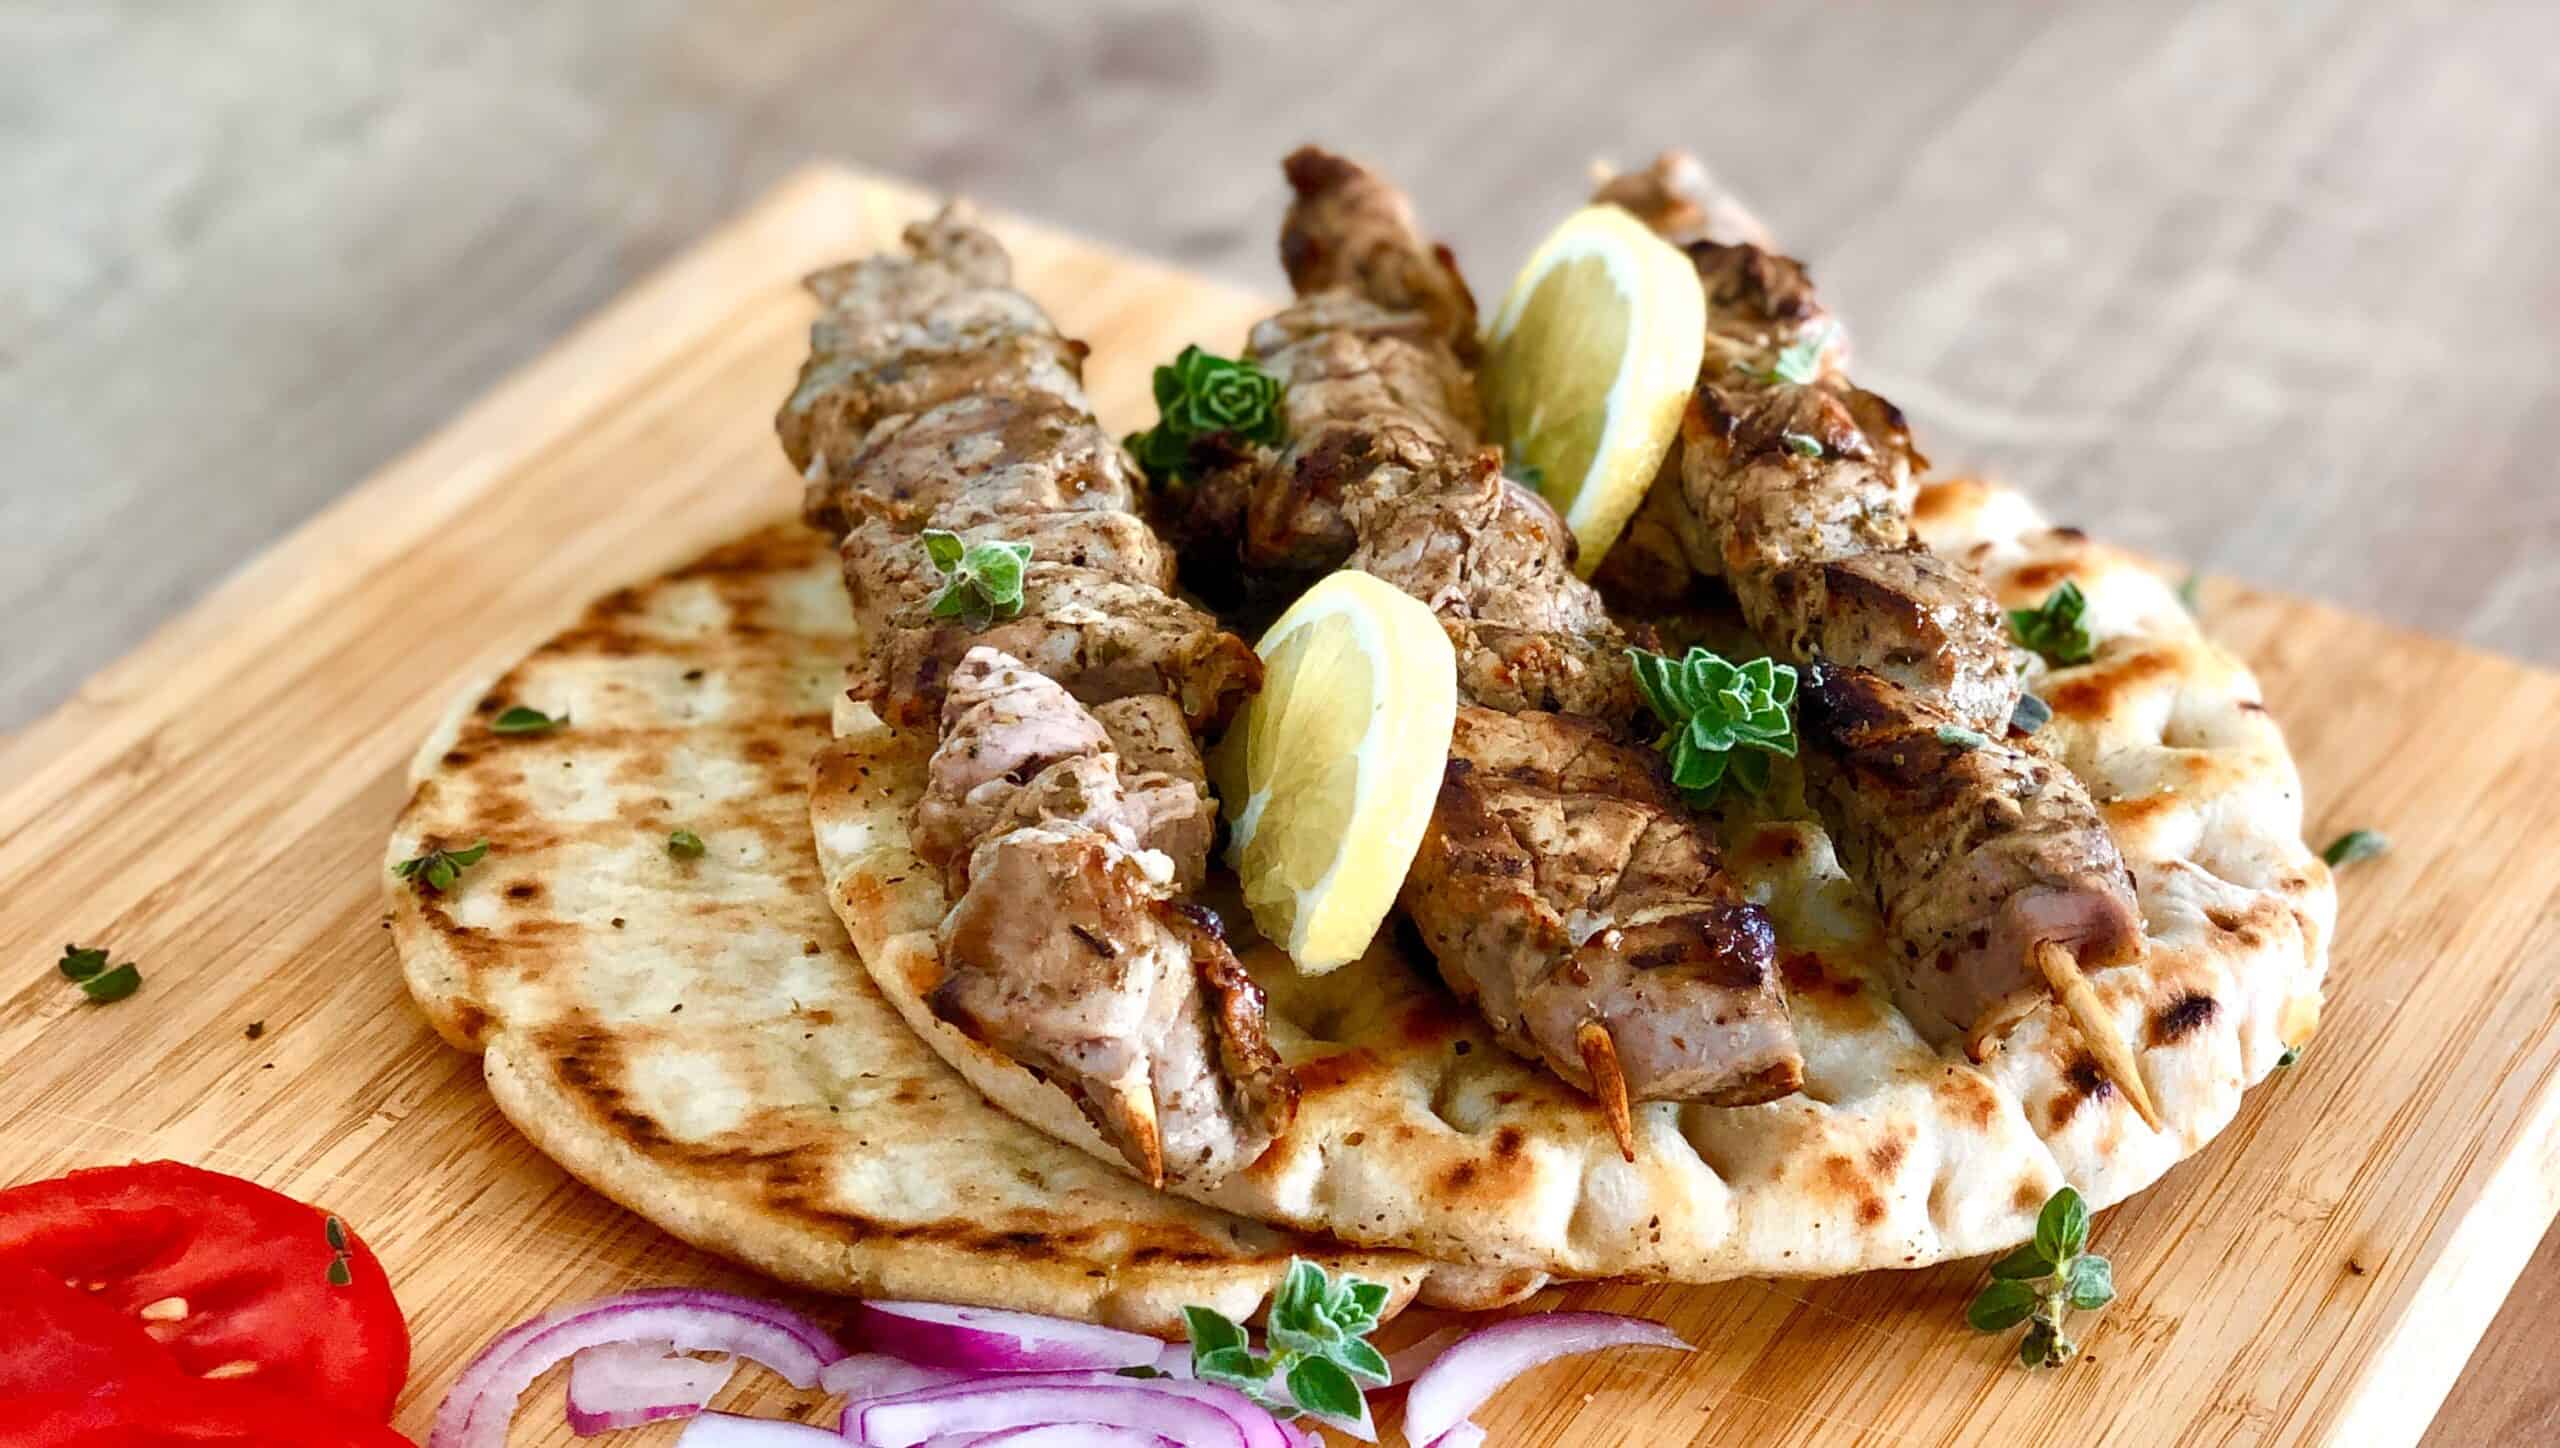 Greek pork souvlaki skewers (Kebabs)